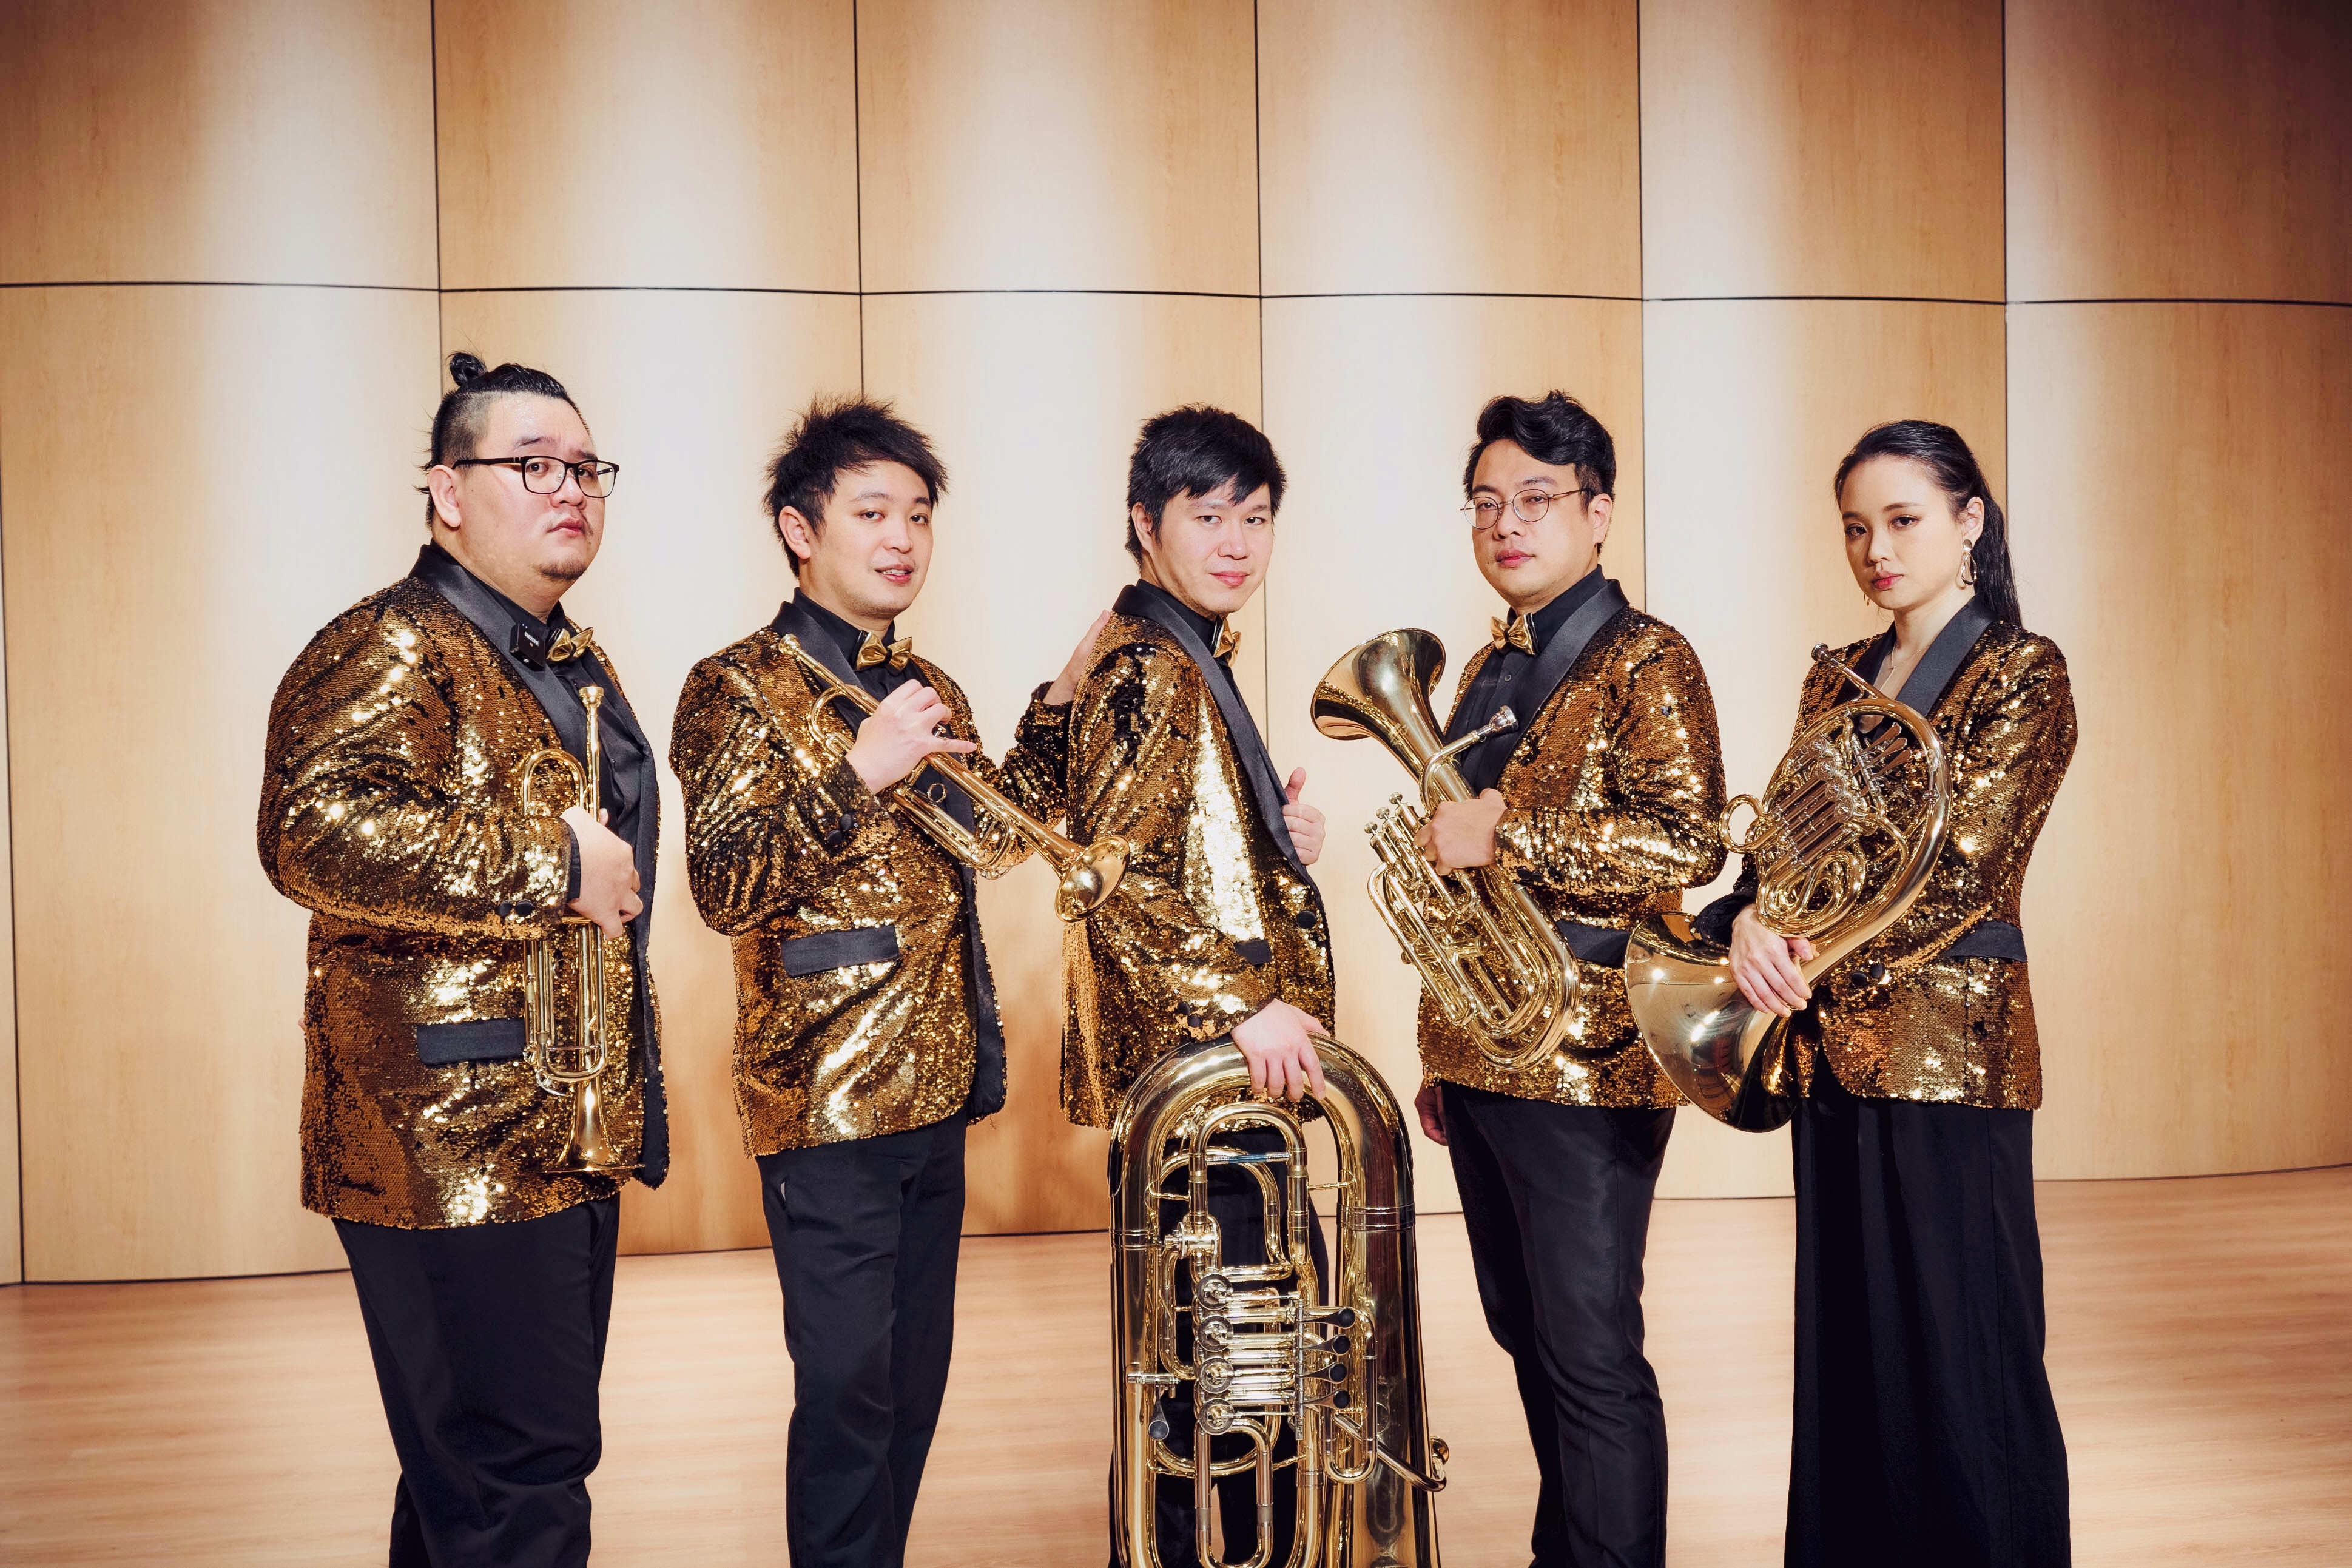 新北2021演奏廳音樂沙龍11月10日演出金喇叭銅管5重奏《台灣土地的歌-我們的成長軌跡》